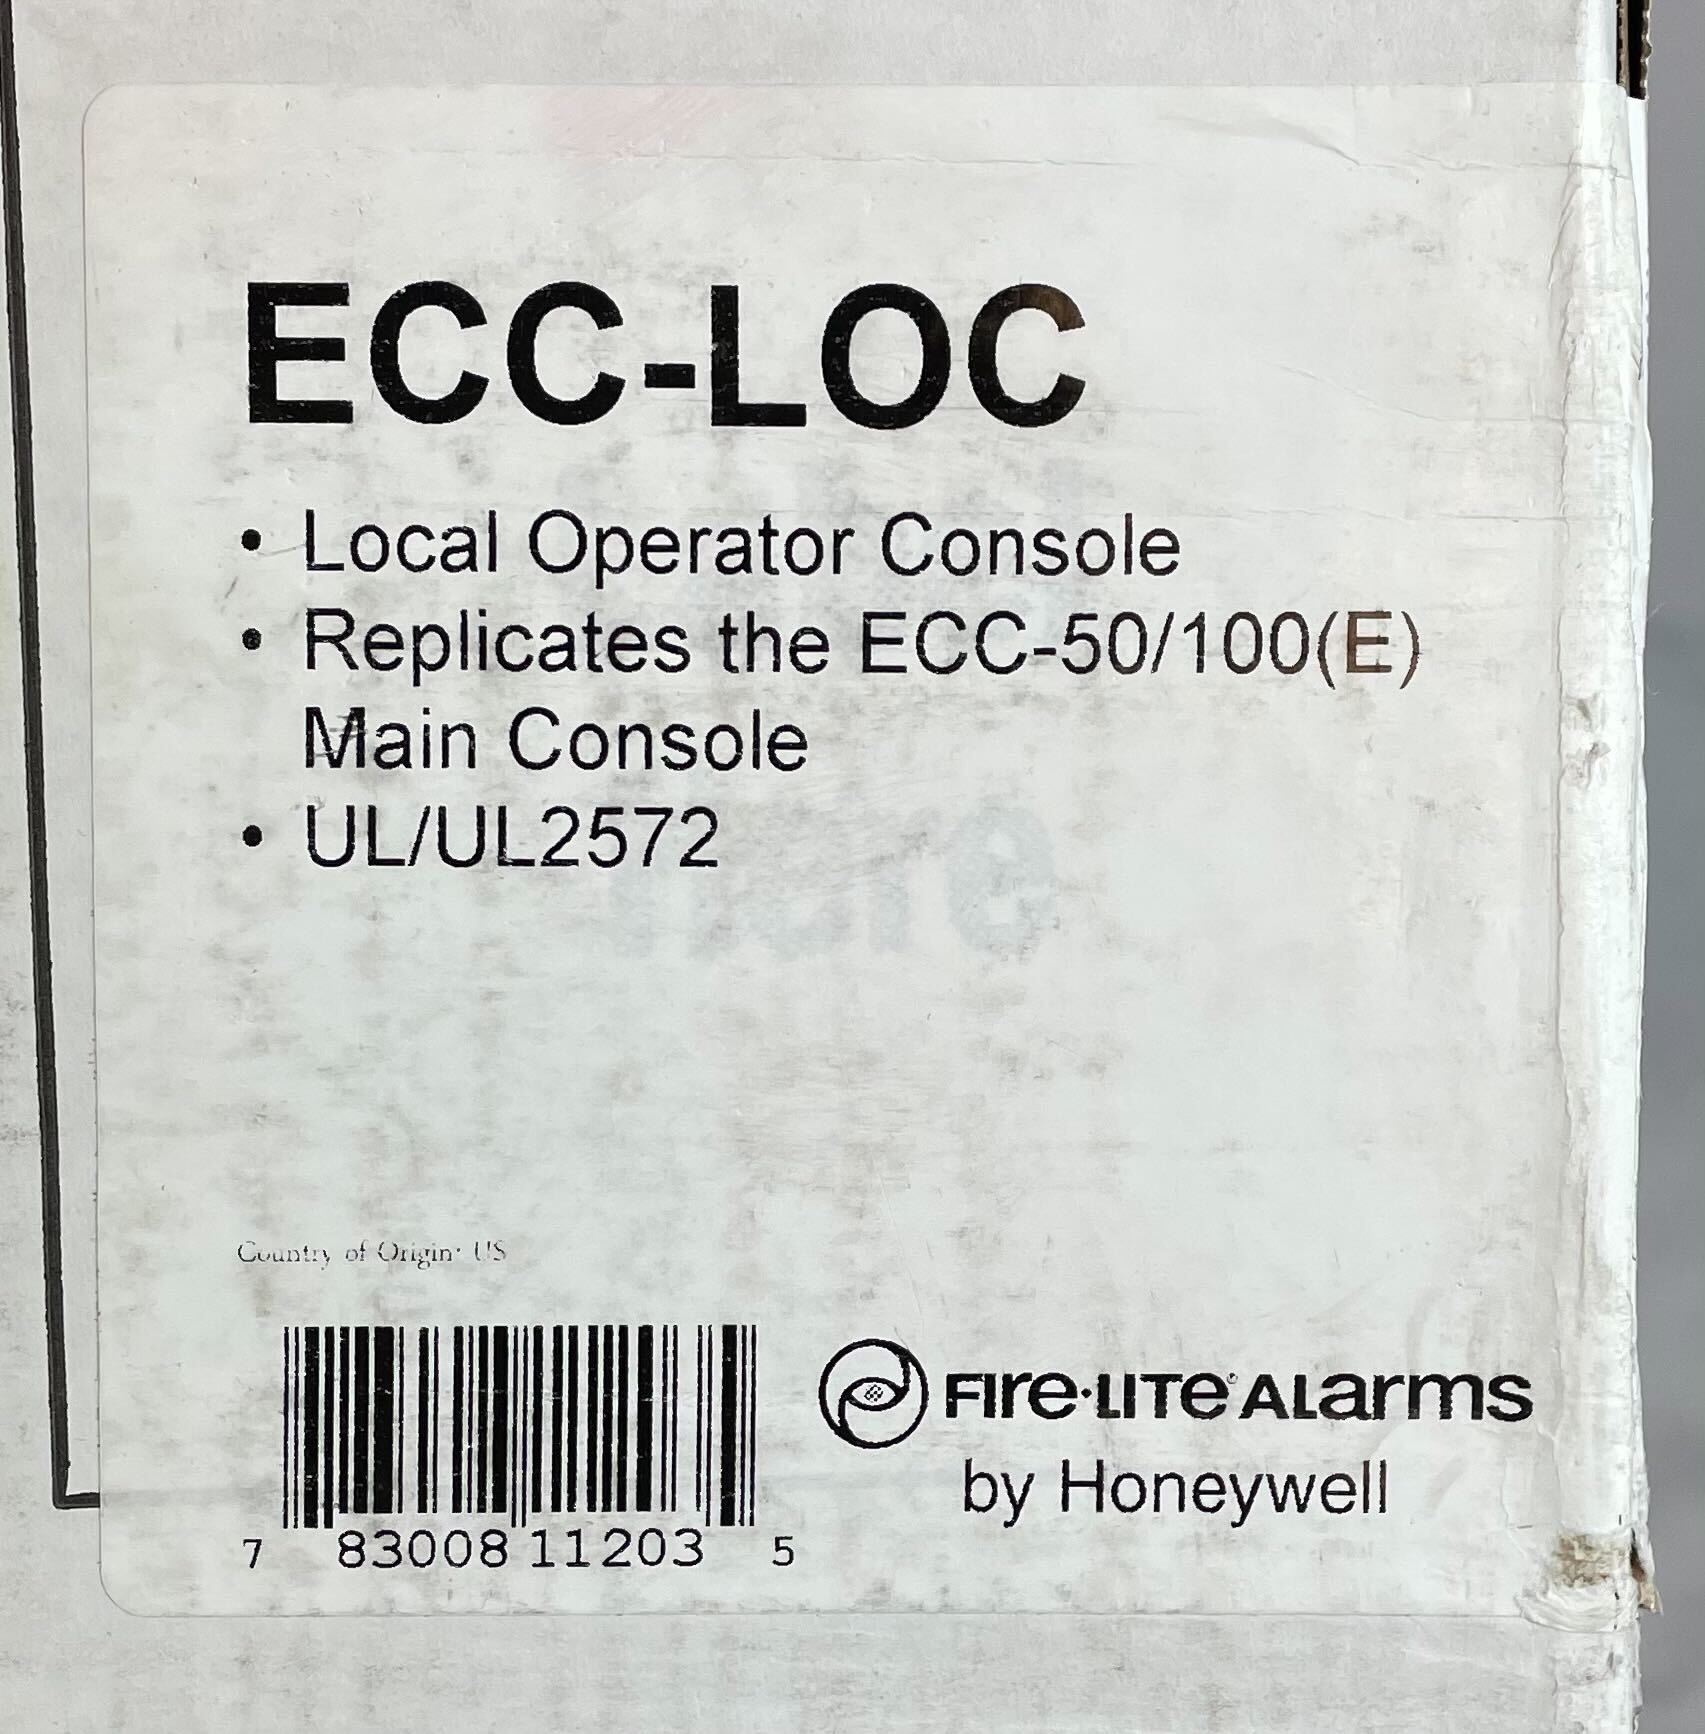 Firelite ECC-LOC - The Fire Alarm Supplier